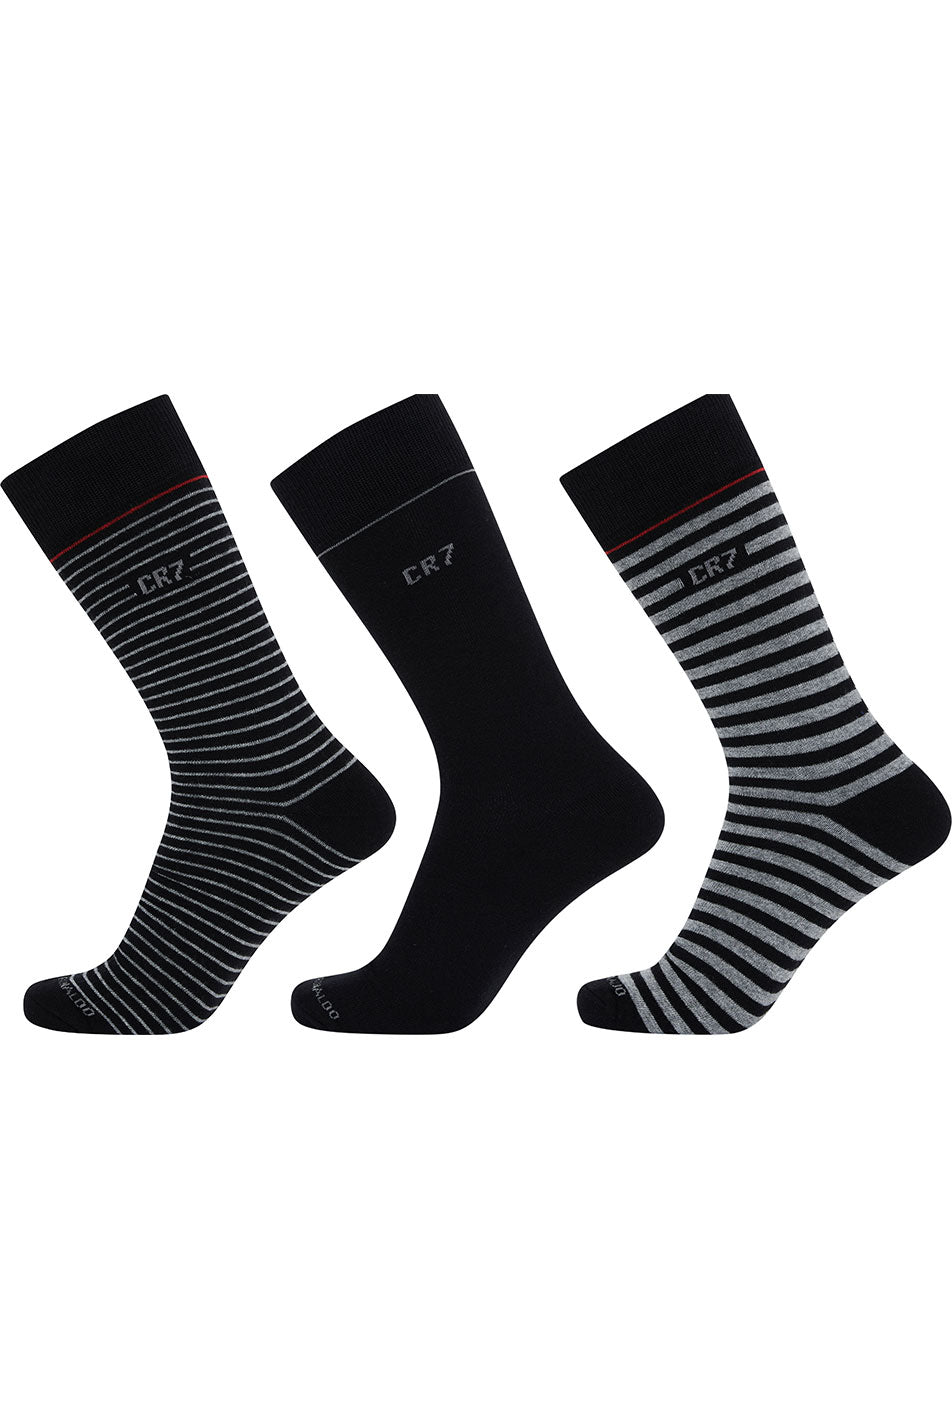 CR7 3 Pack Men's Socks